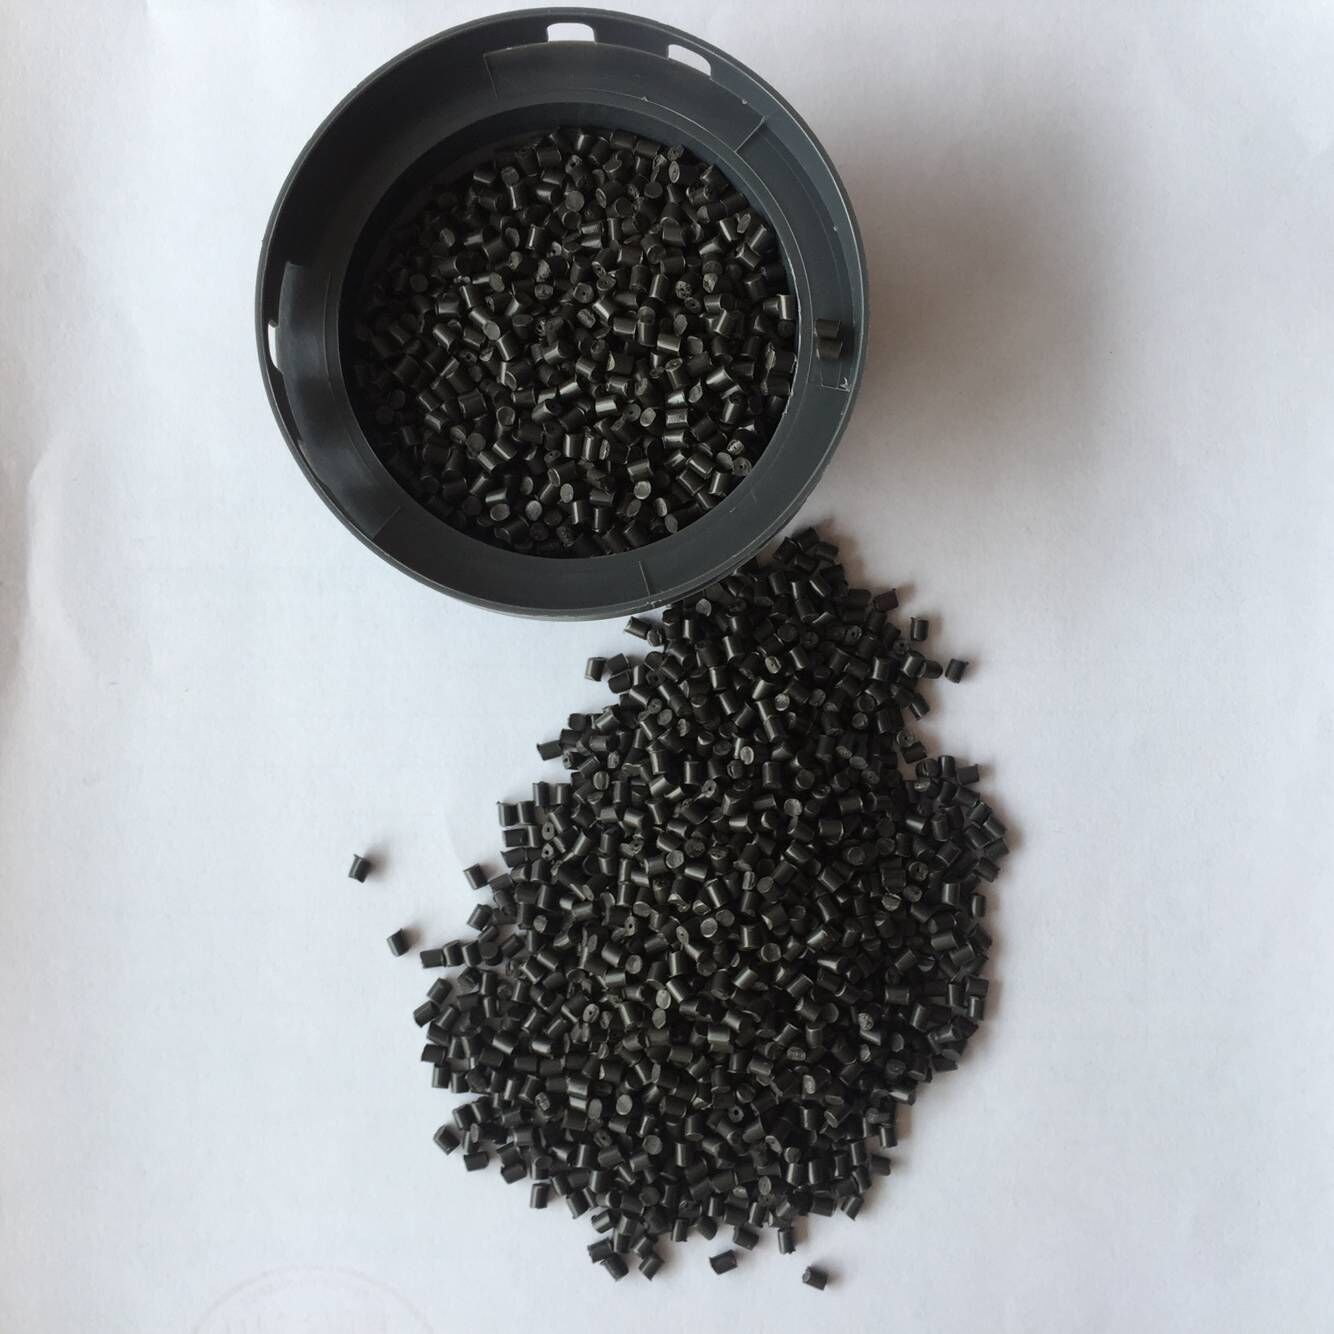 黑色尼龙塑料专用激光打标母粒 镭雕母粒 激光打标添加剂